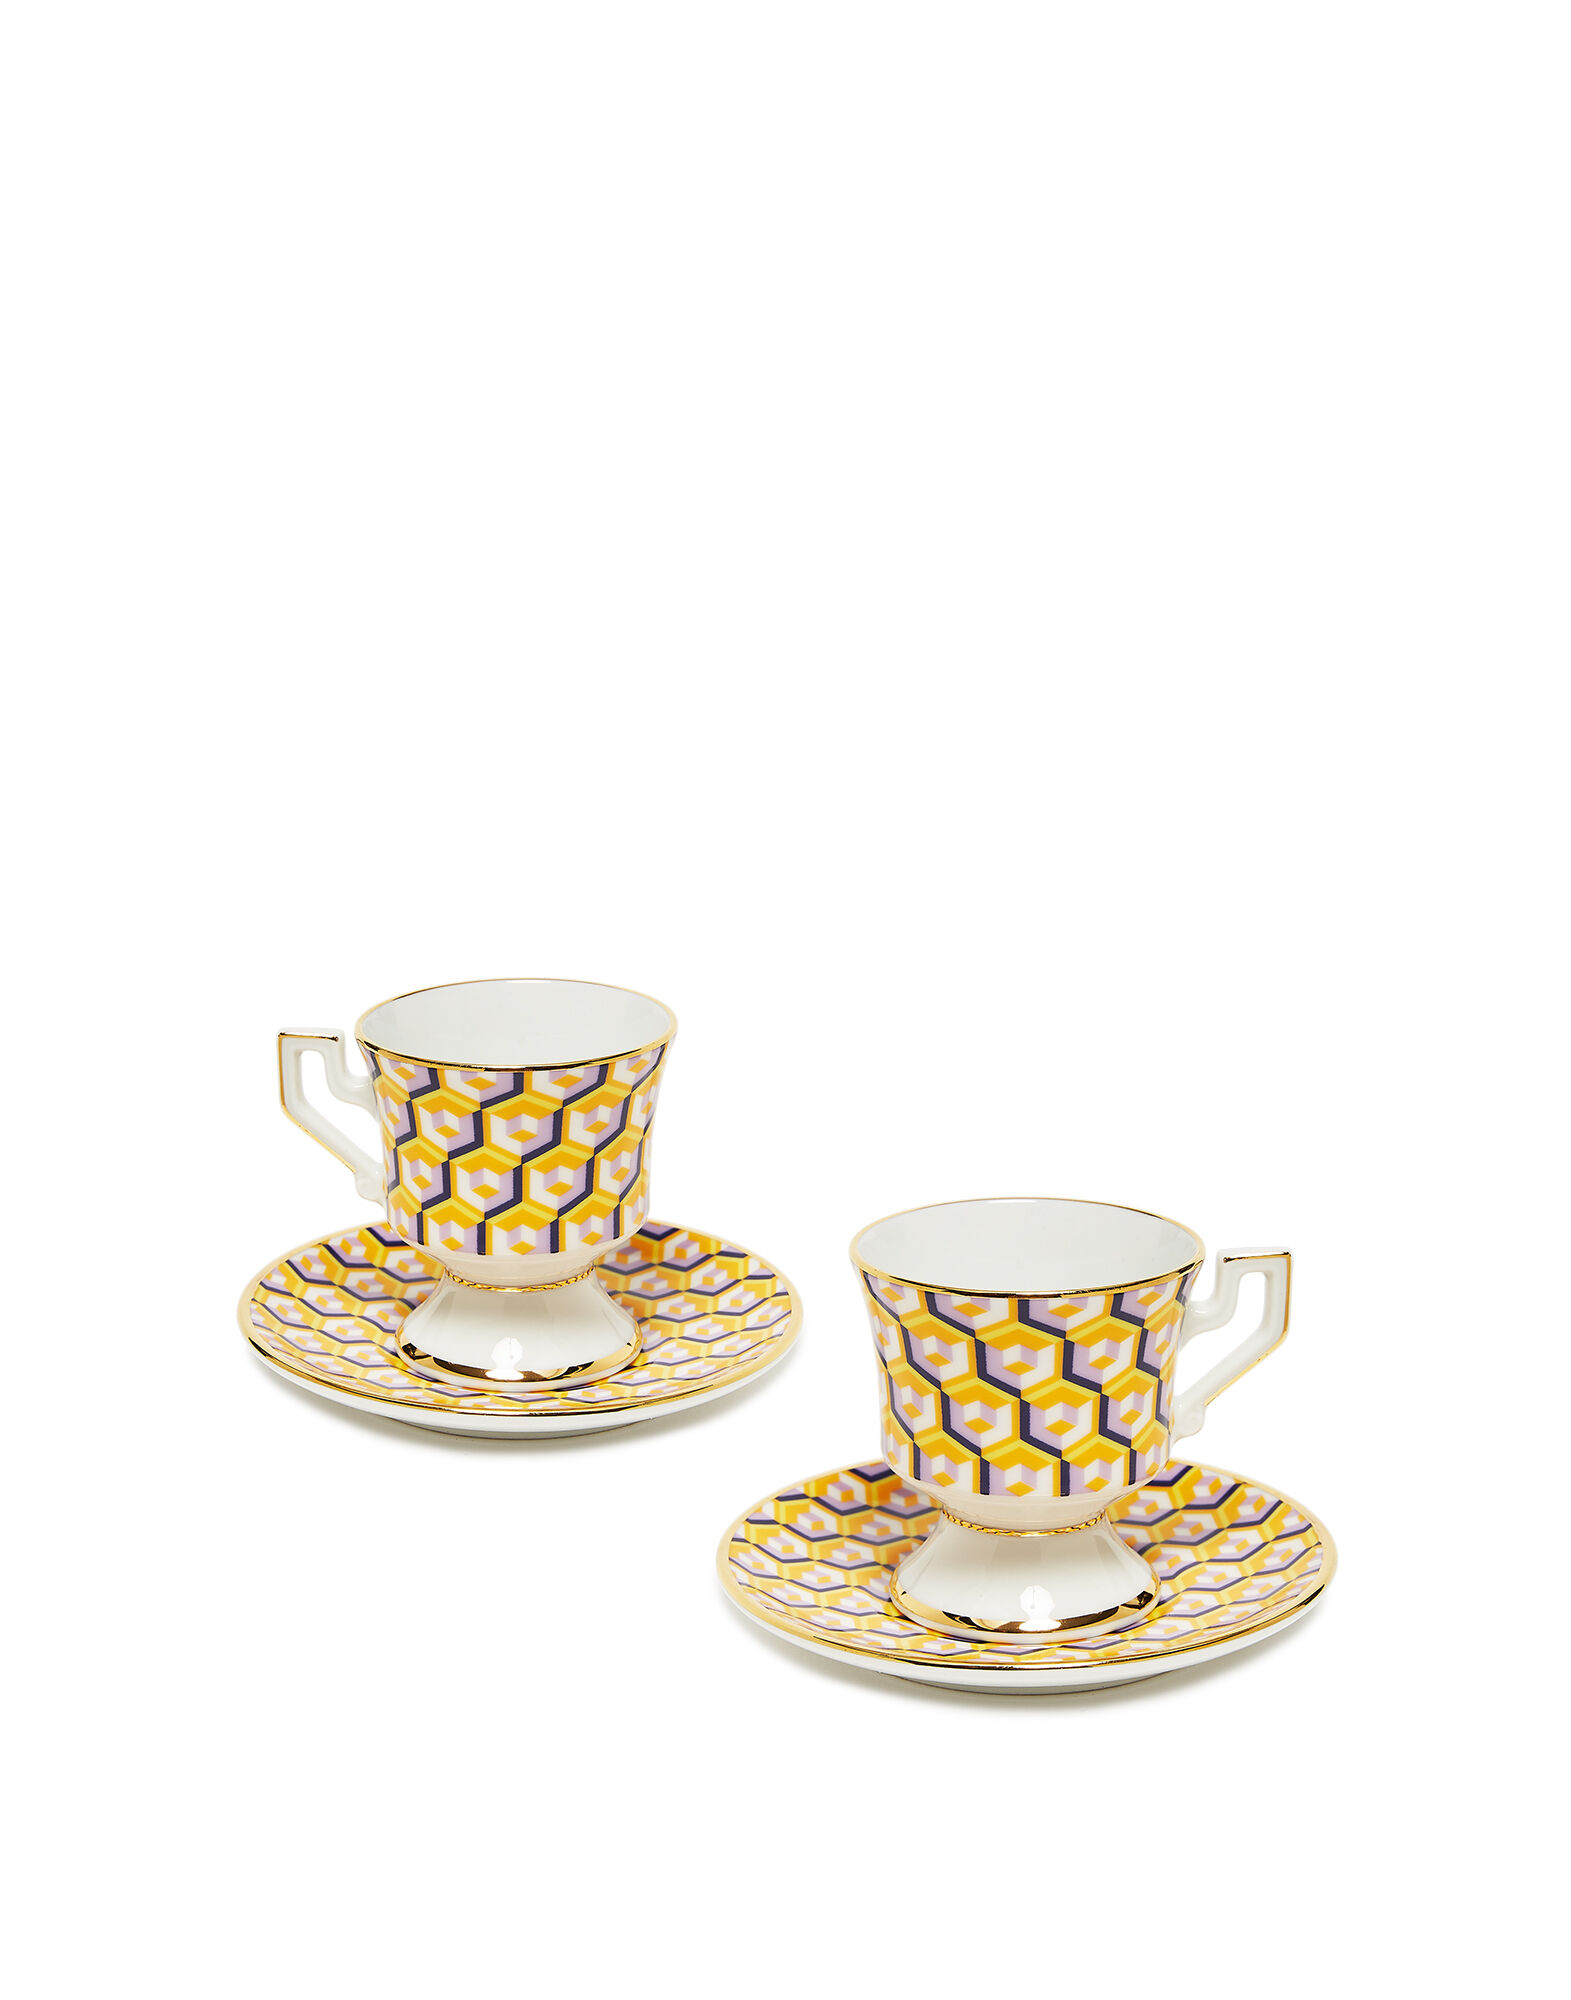 Espresso Cup & Saucer Set of 2 in Libellula - Homeware